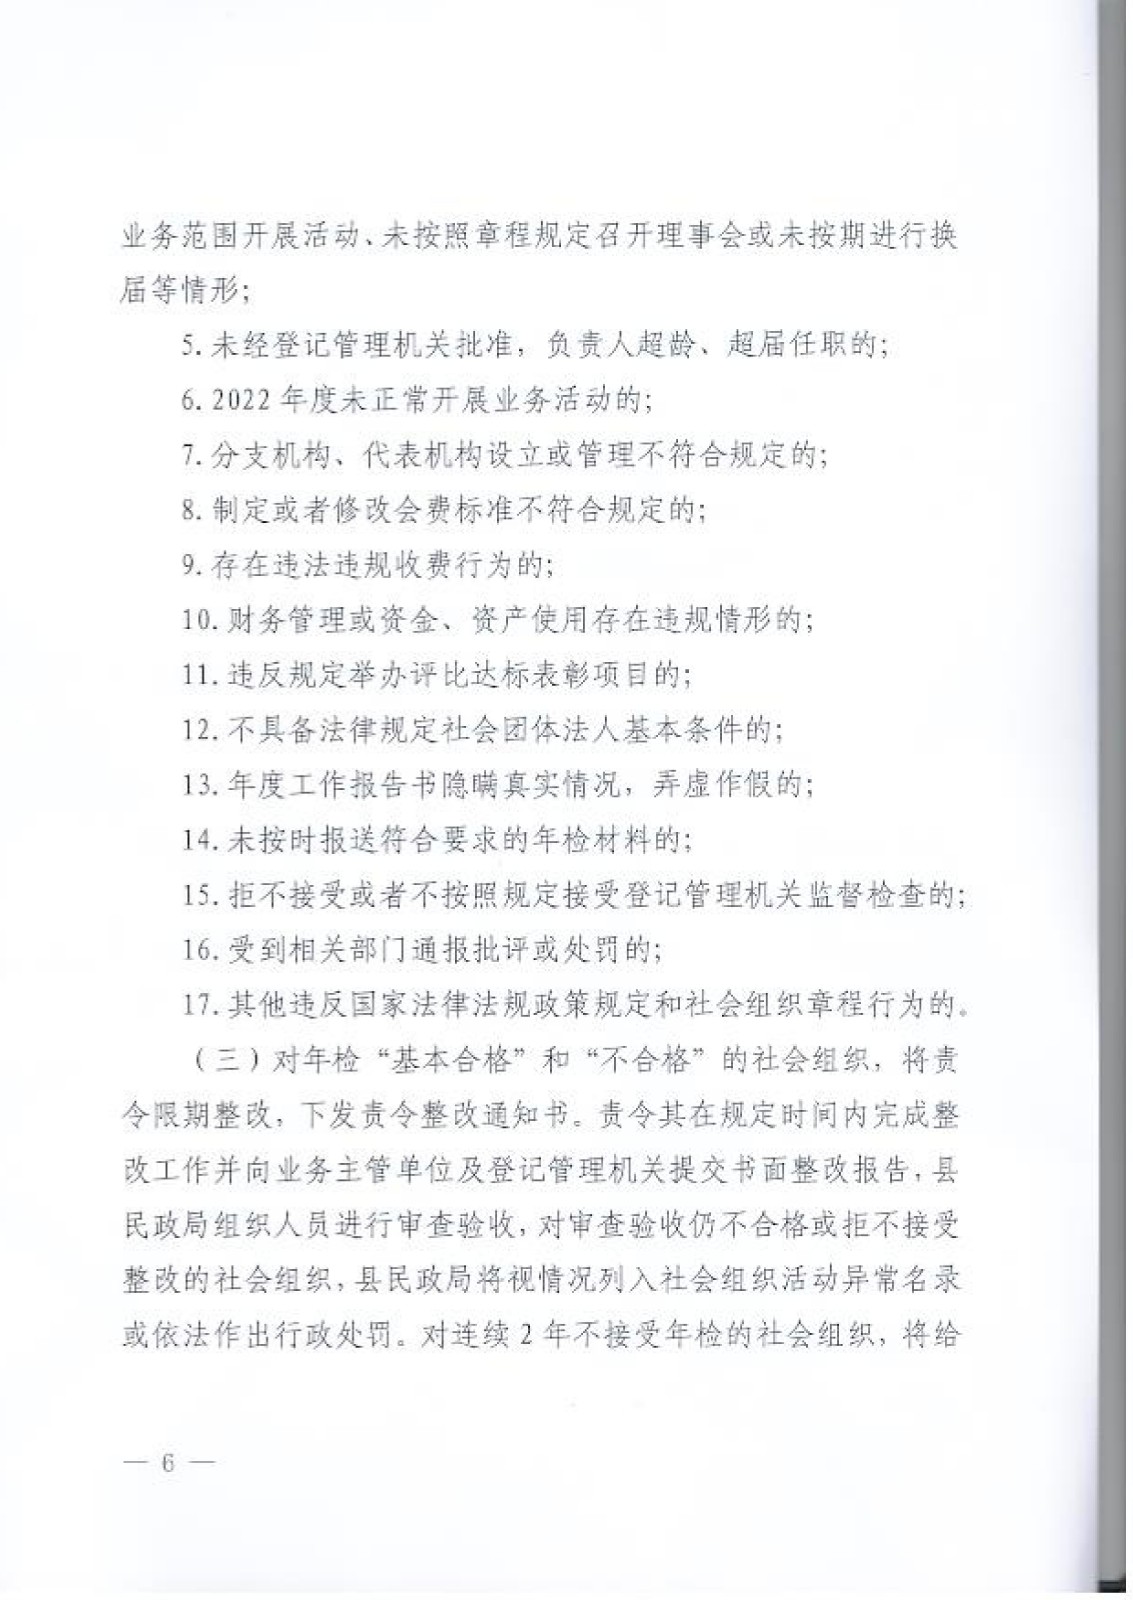 宝丰县民政局关于开展2022年度社会组织年检工作的通知_page-0006.jpg